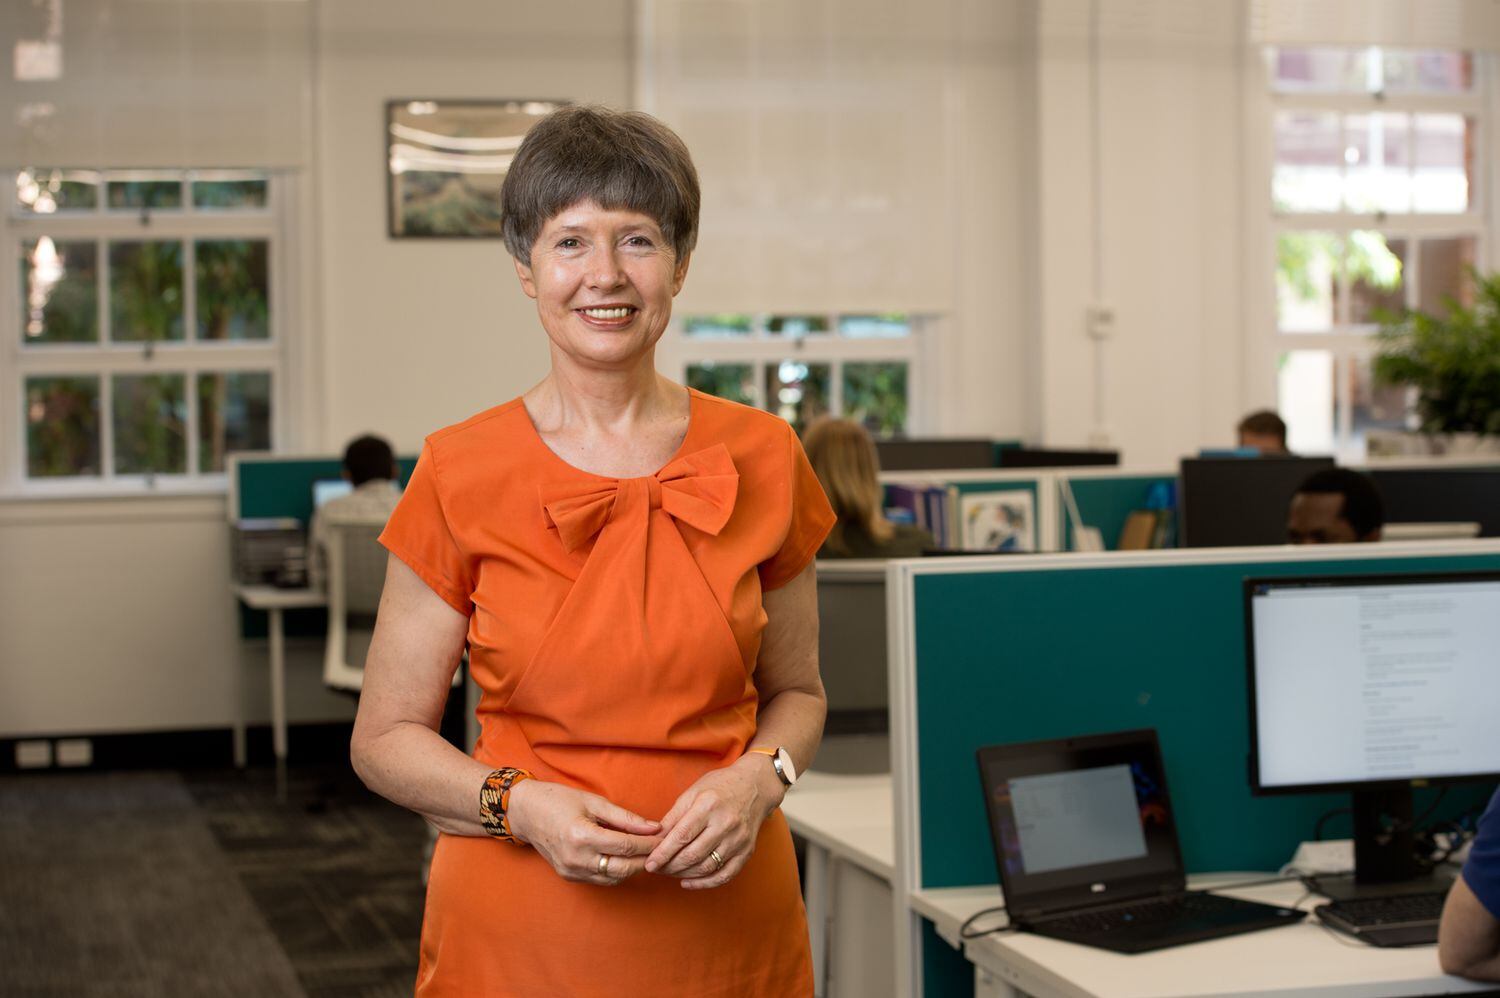 La profesora Lidia Morawska, experta en calidad del aire, en una imagen de la Universidad de Tecnología de Queensland (Brisbane).